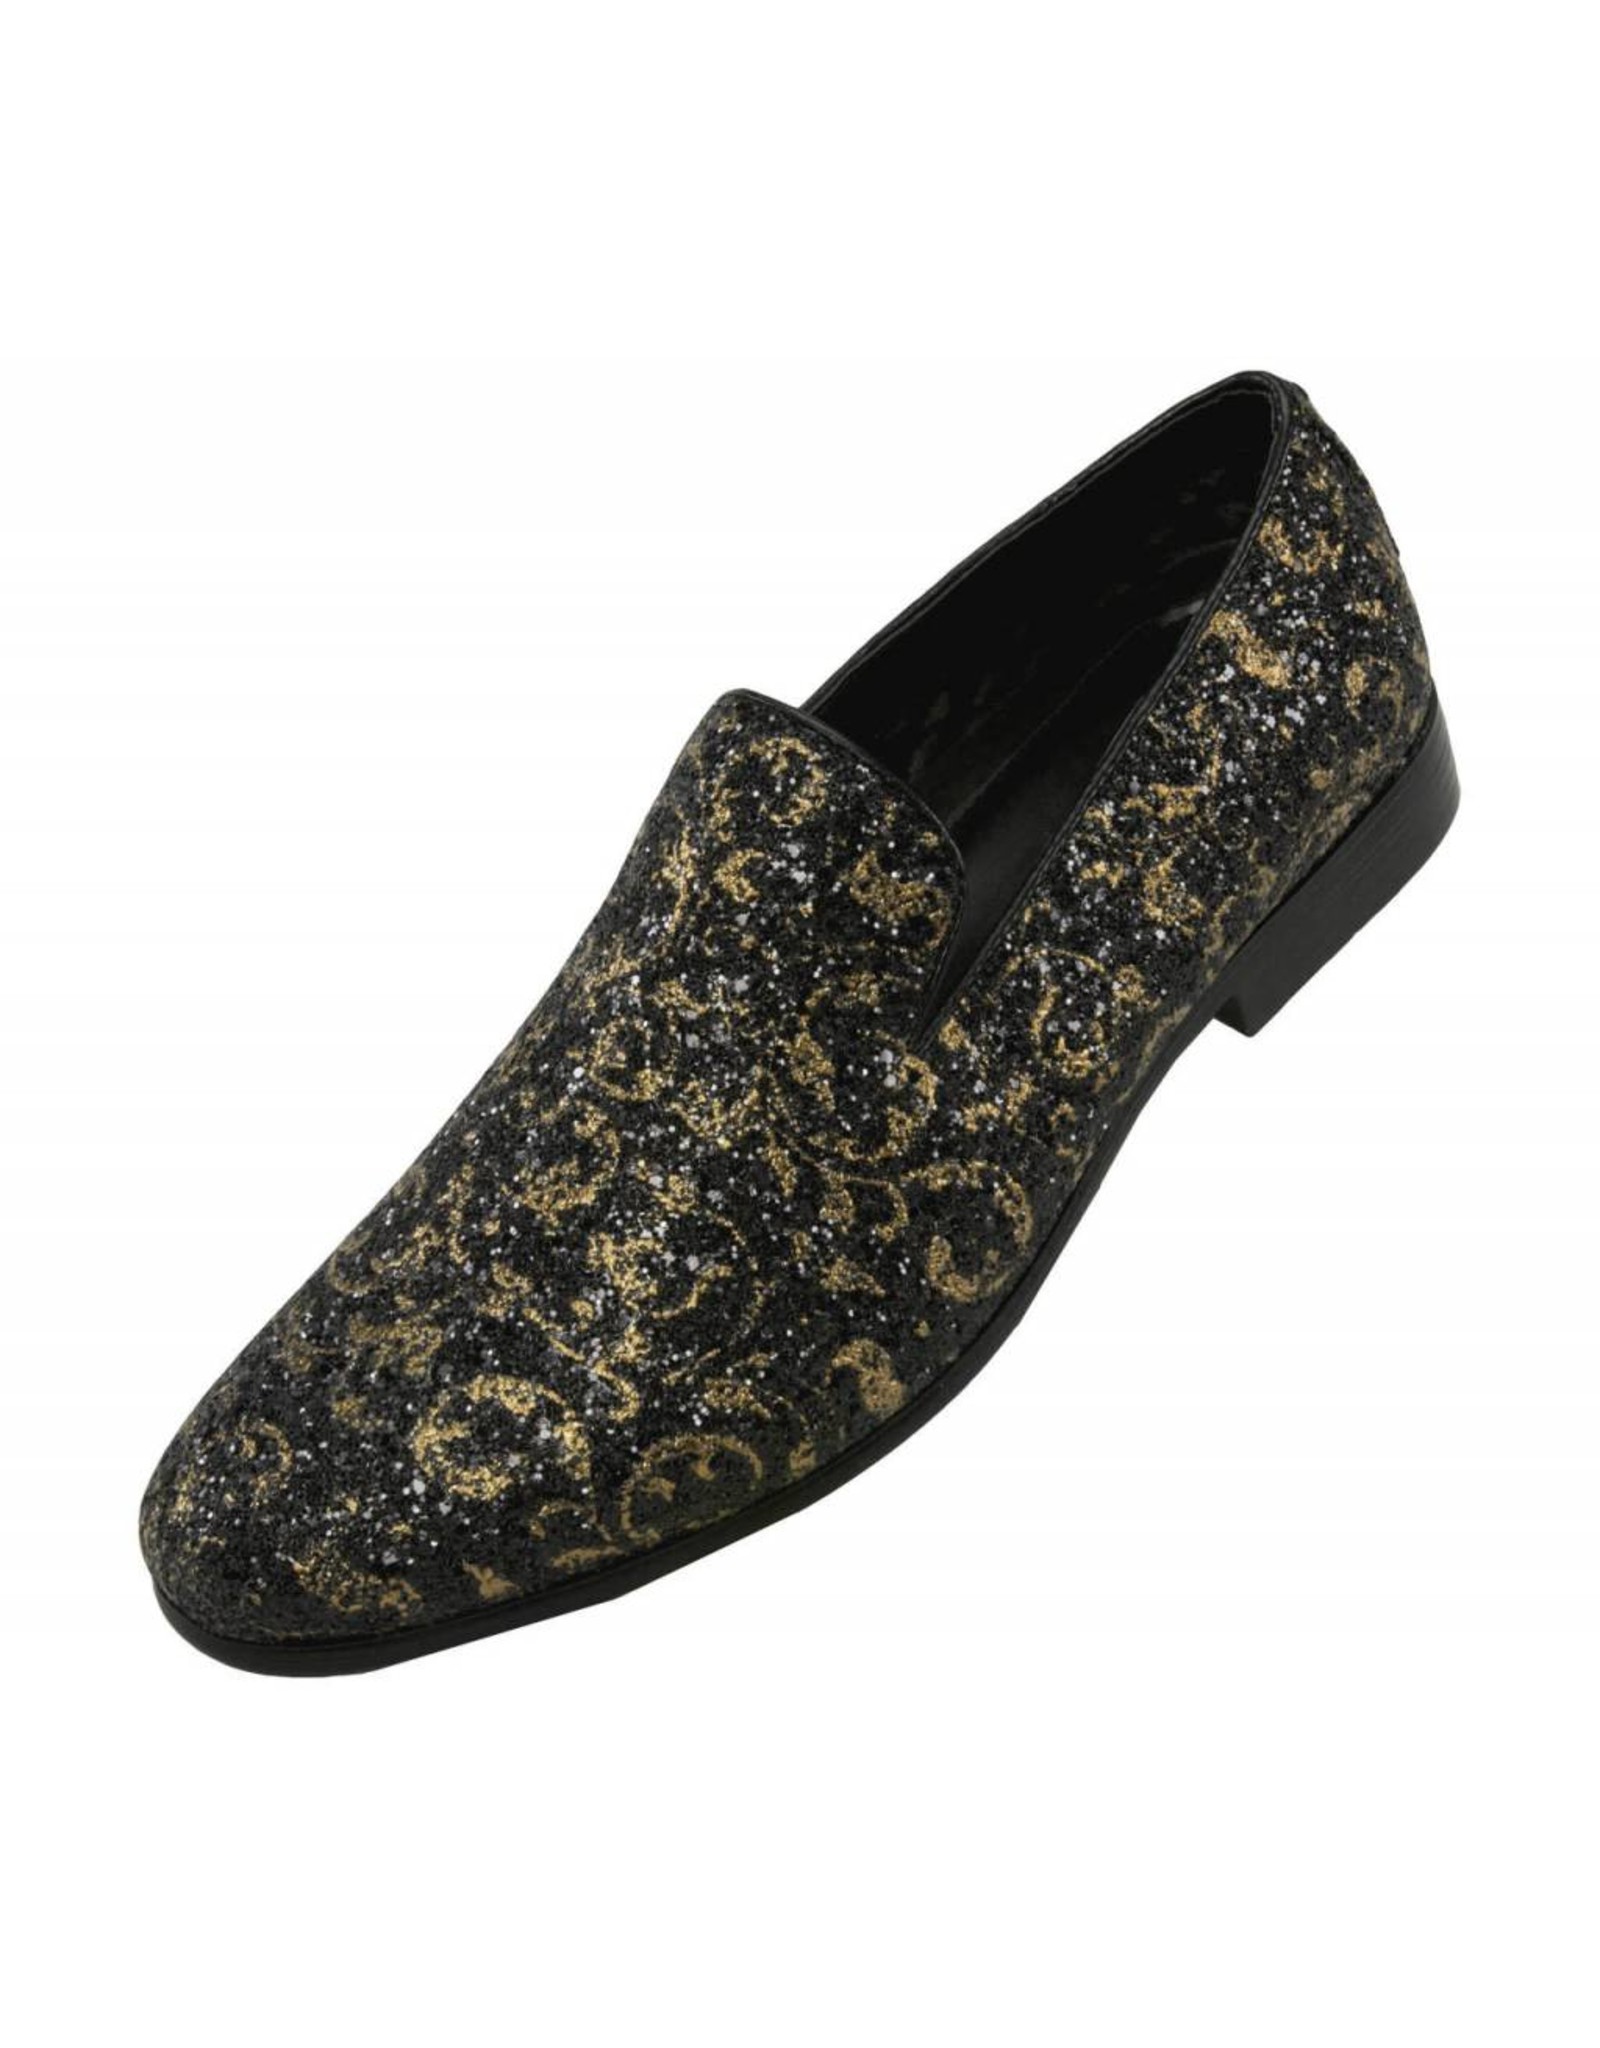 Amali Amali Erin Formal Shoe - Gold/Black